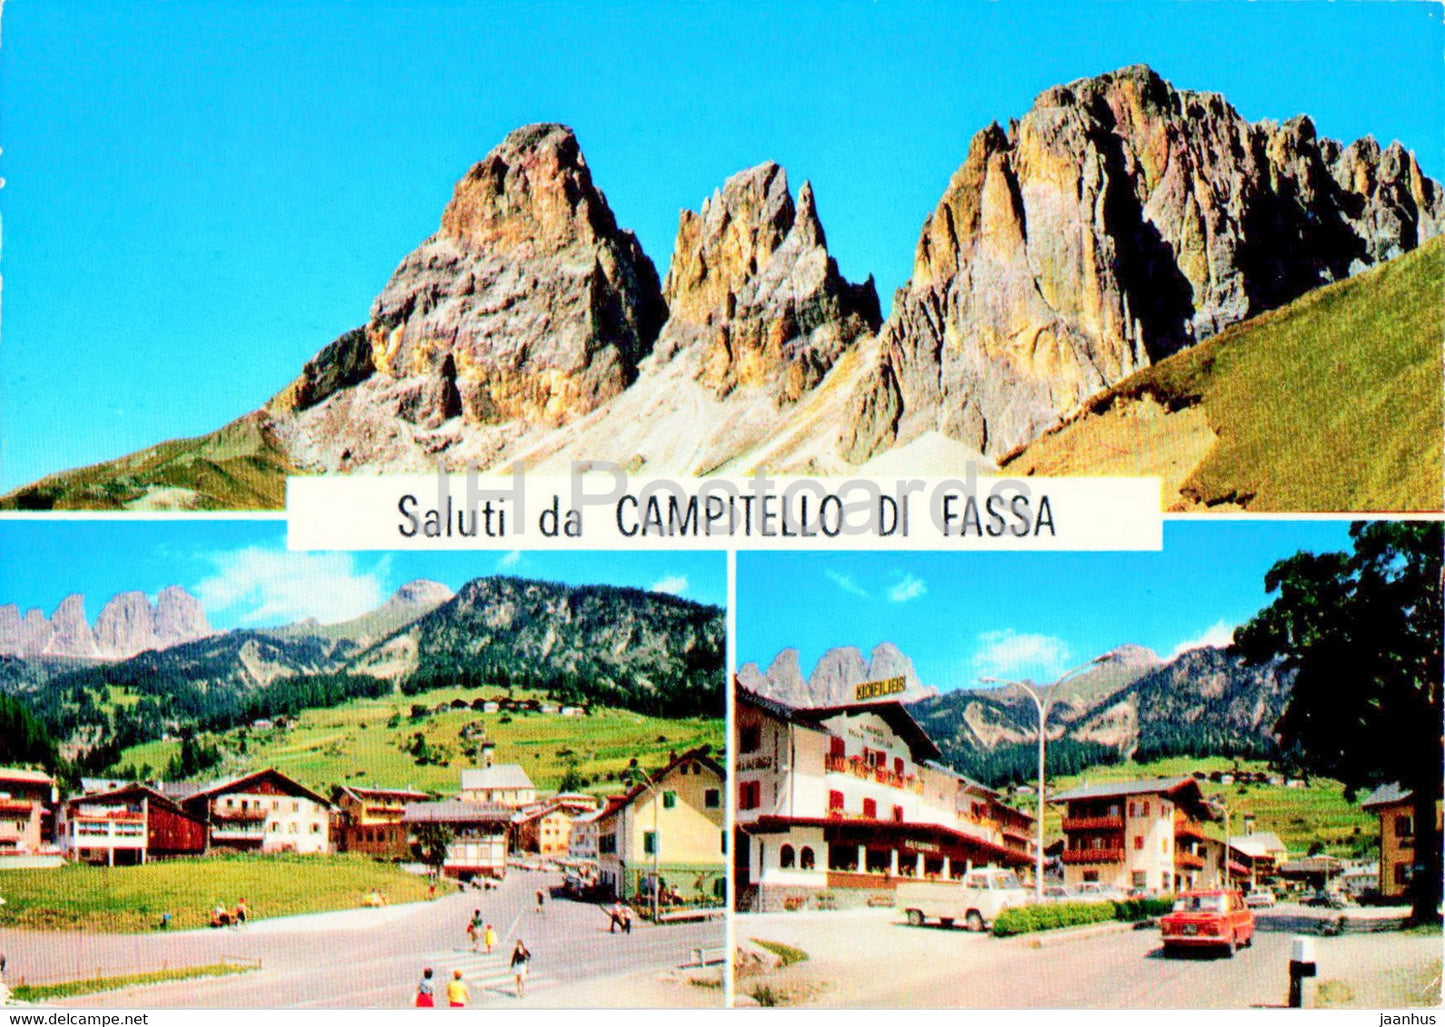 Saluti da Campitello di Fassa - 1973 - Italy - used - JH Postcards